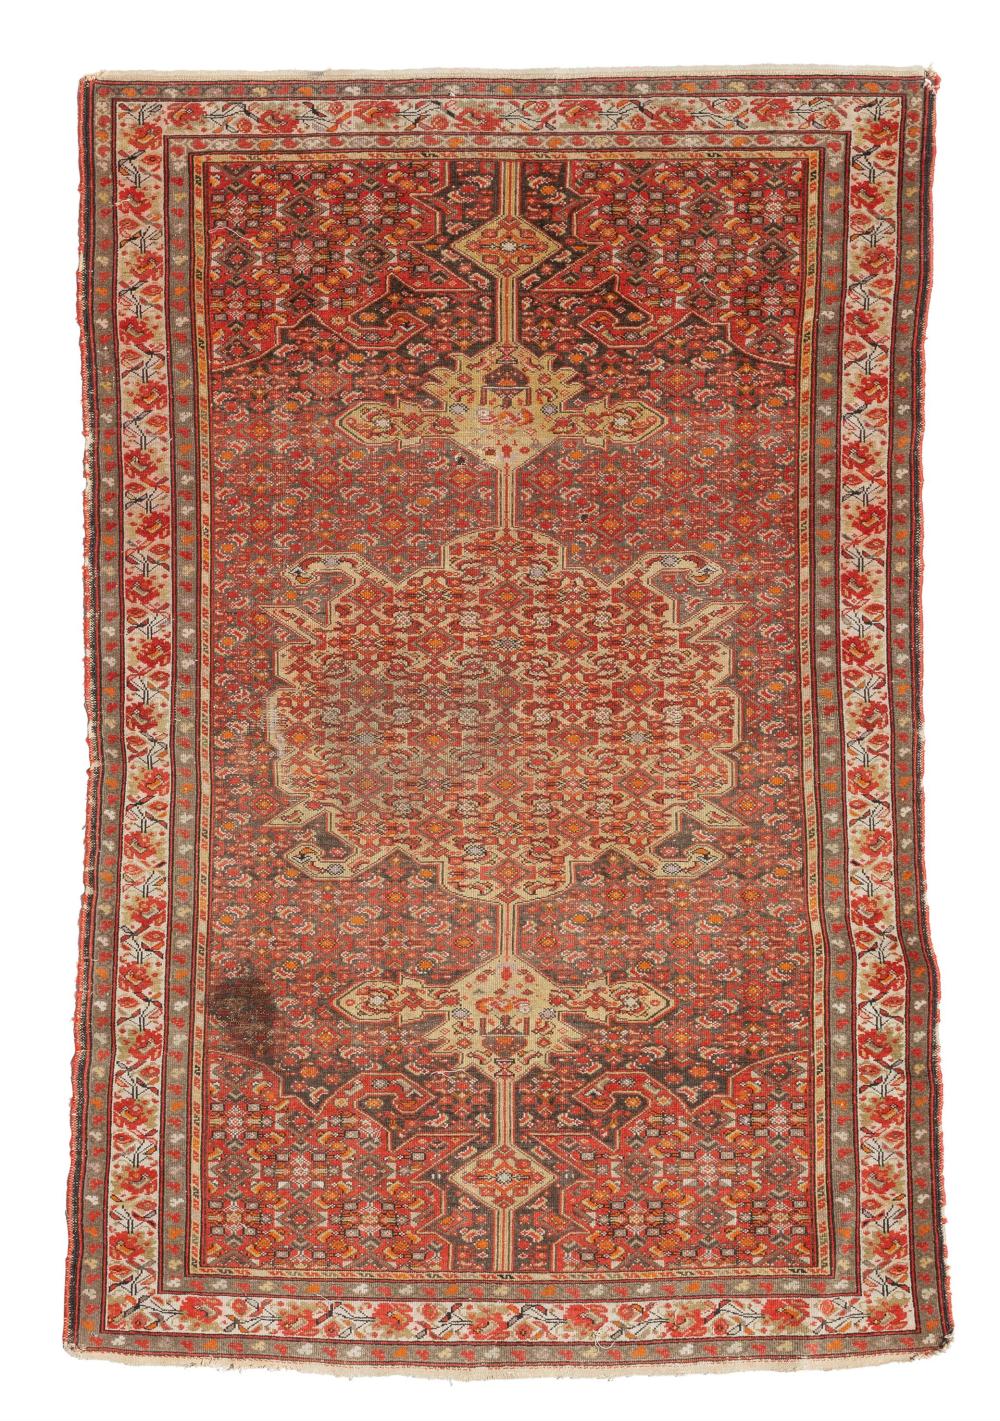 A PERSIAN RUGA Persian rug Early 2dacc7